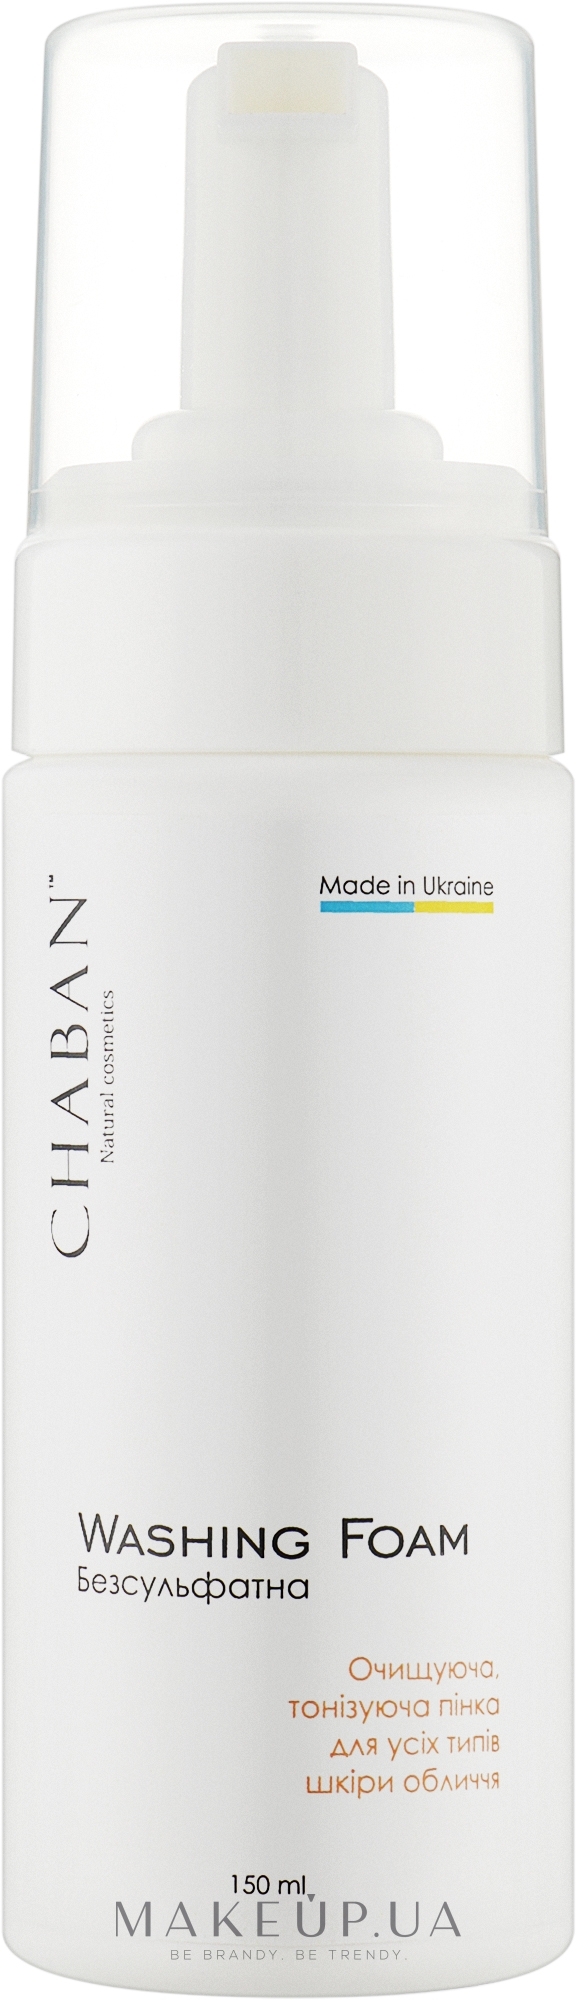 Очищающая, тонизирующая пенка для всех типов кожи лица - Chaban Natural Cosmetics Washing Foam — фото 150ml